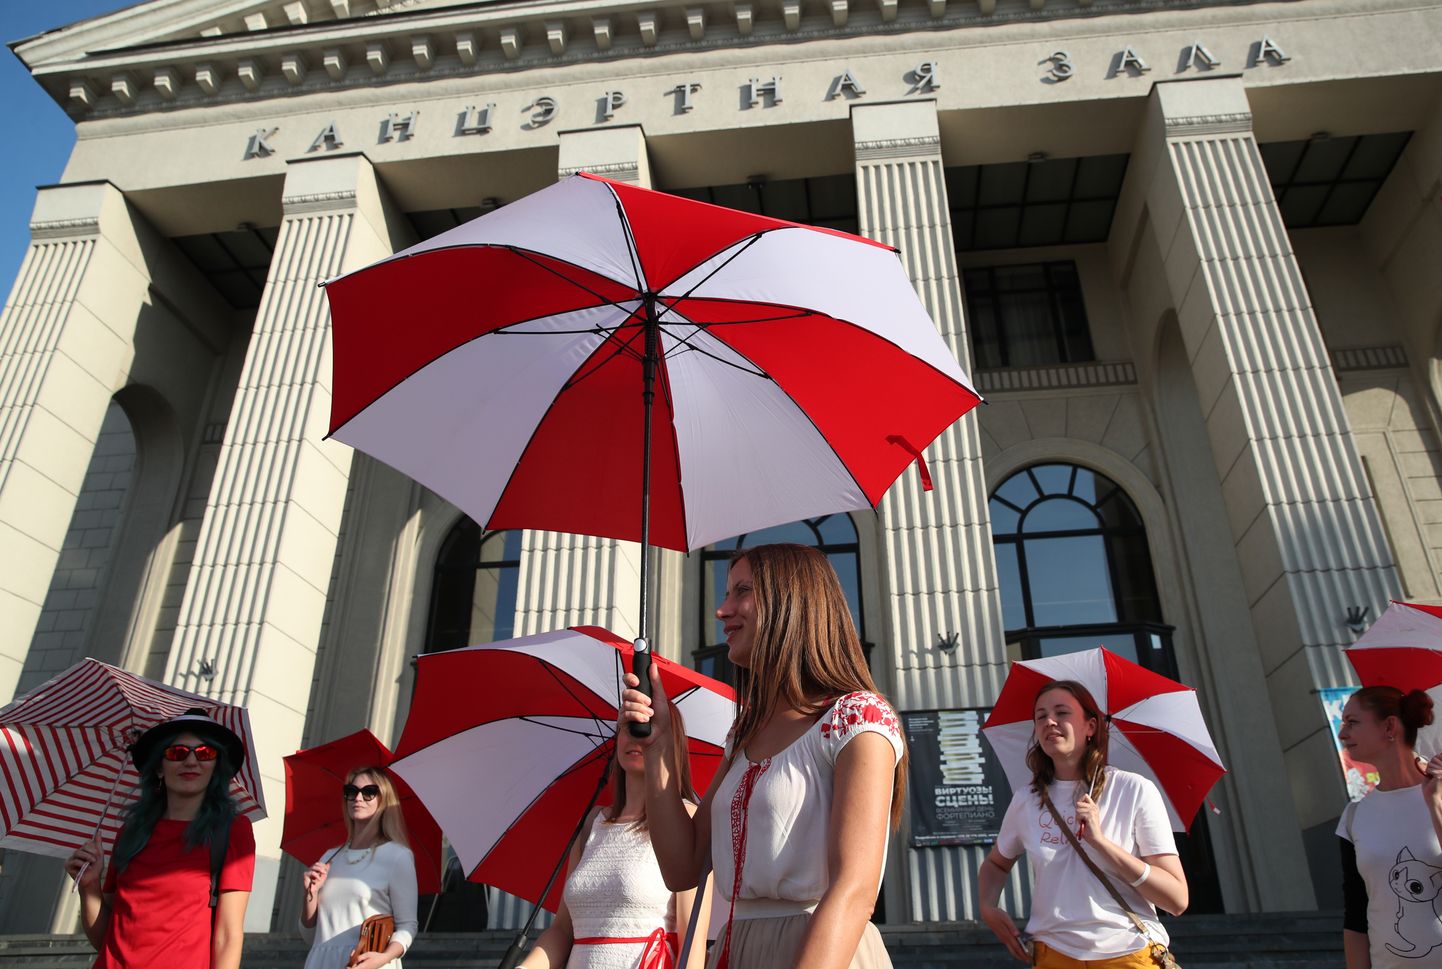 Naised kandmas Minskis puna-valgeid vihmavarje. Kogu riigis peavad kommunaalteenistused puna-valge sümboolikaga visa võitlust.